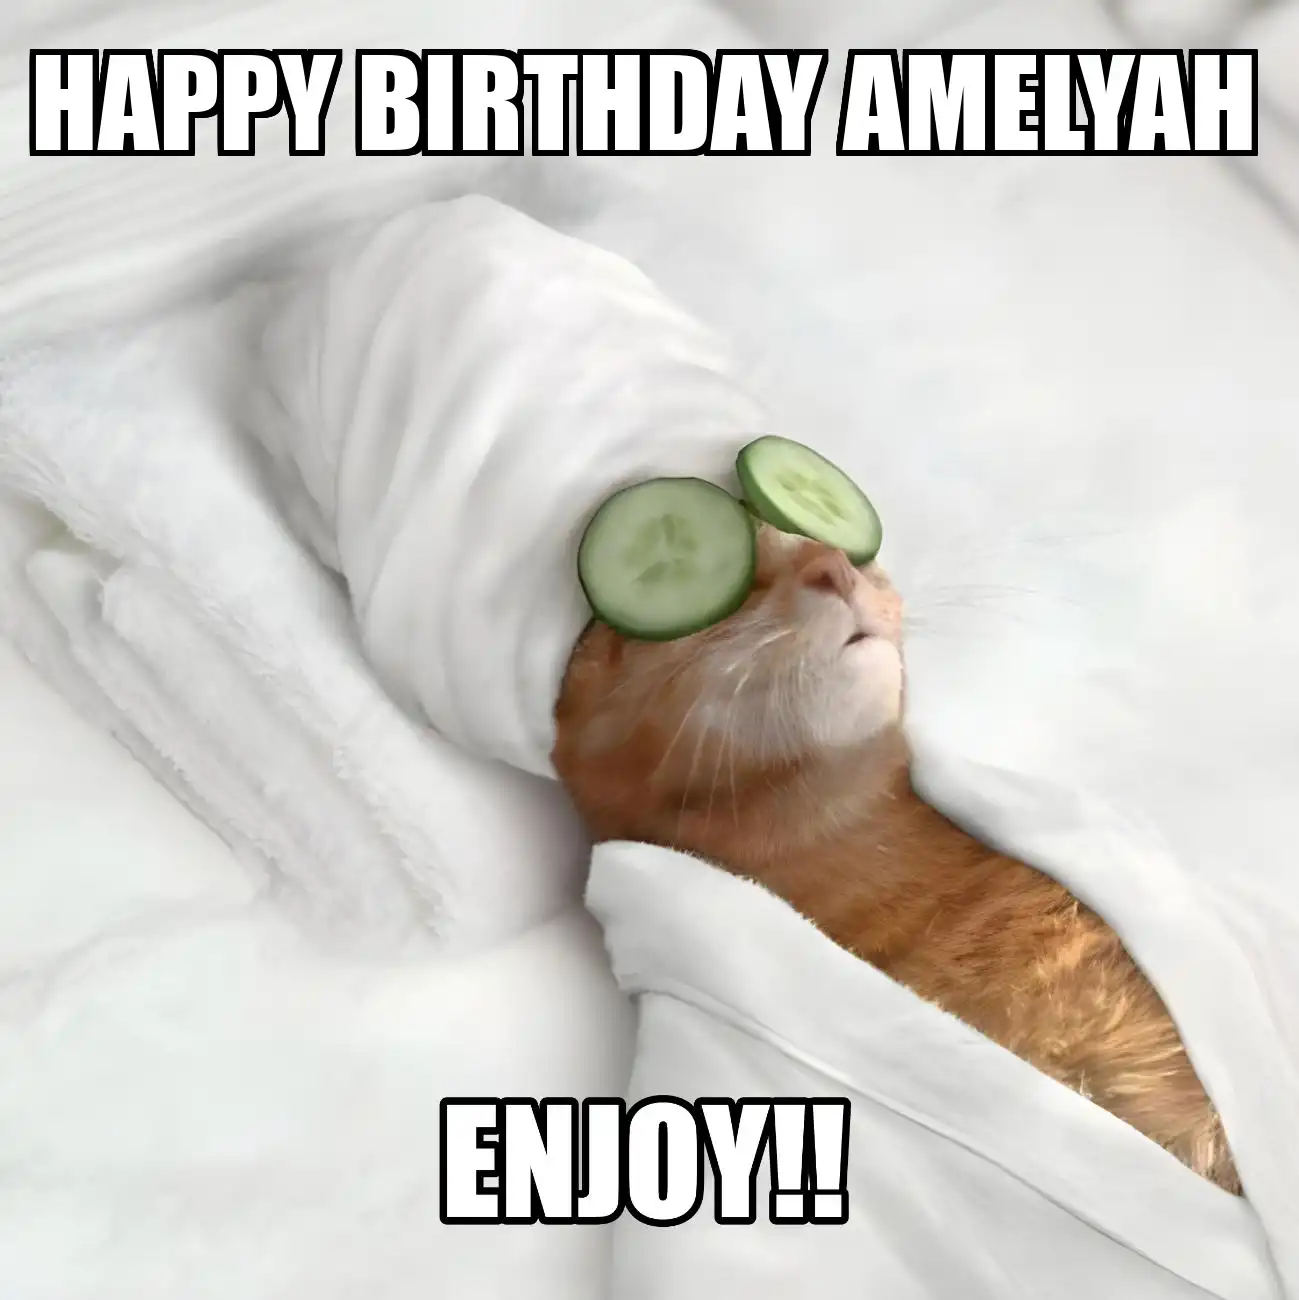 Happy Birthday Amelyah Enjoy Cat Meme